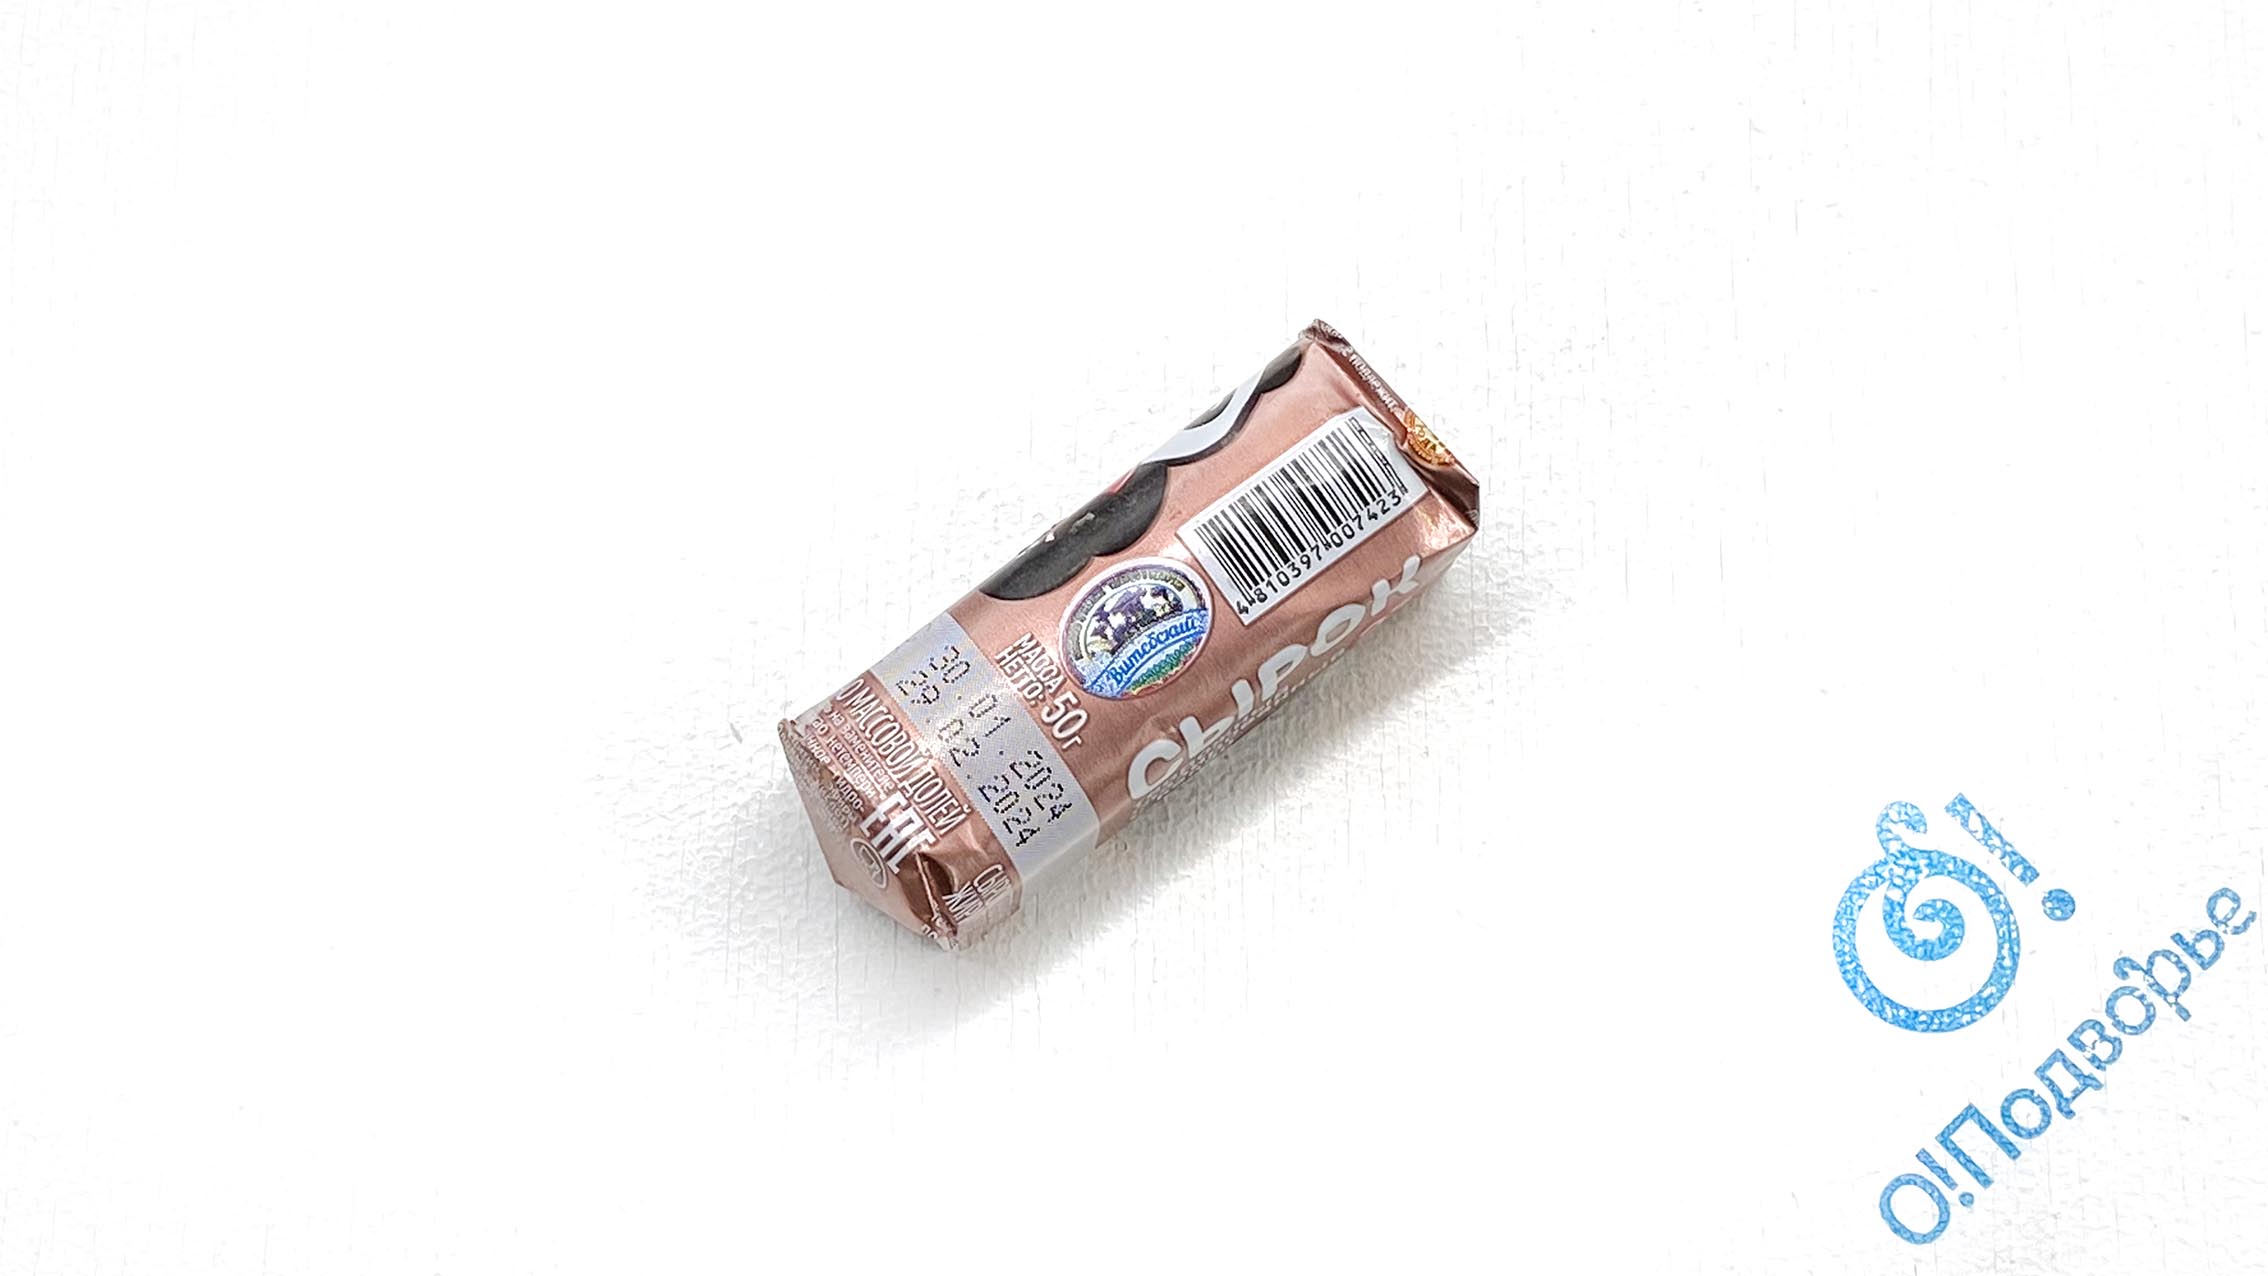 Сырок "МИ-ШУ" творожный глазированный с какао 23%, "Полоцкий молочный комбинат", 50 грамм, (Зл) 